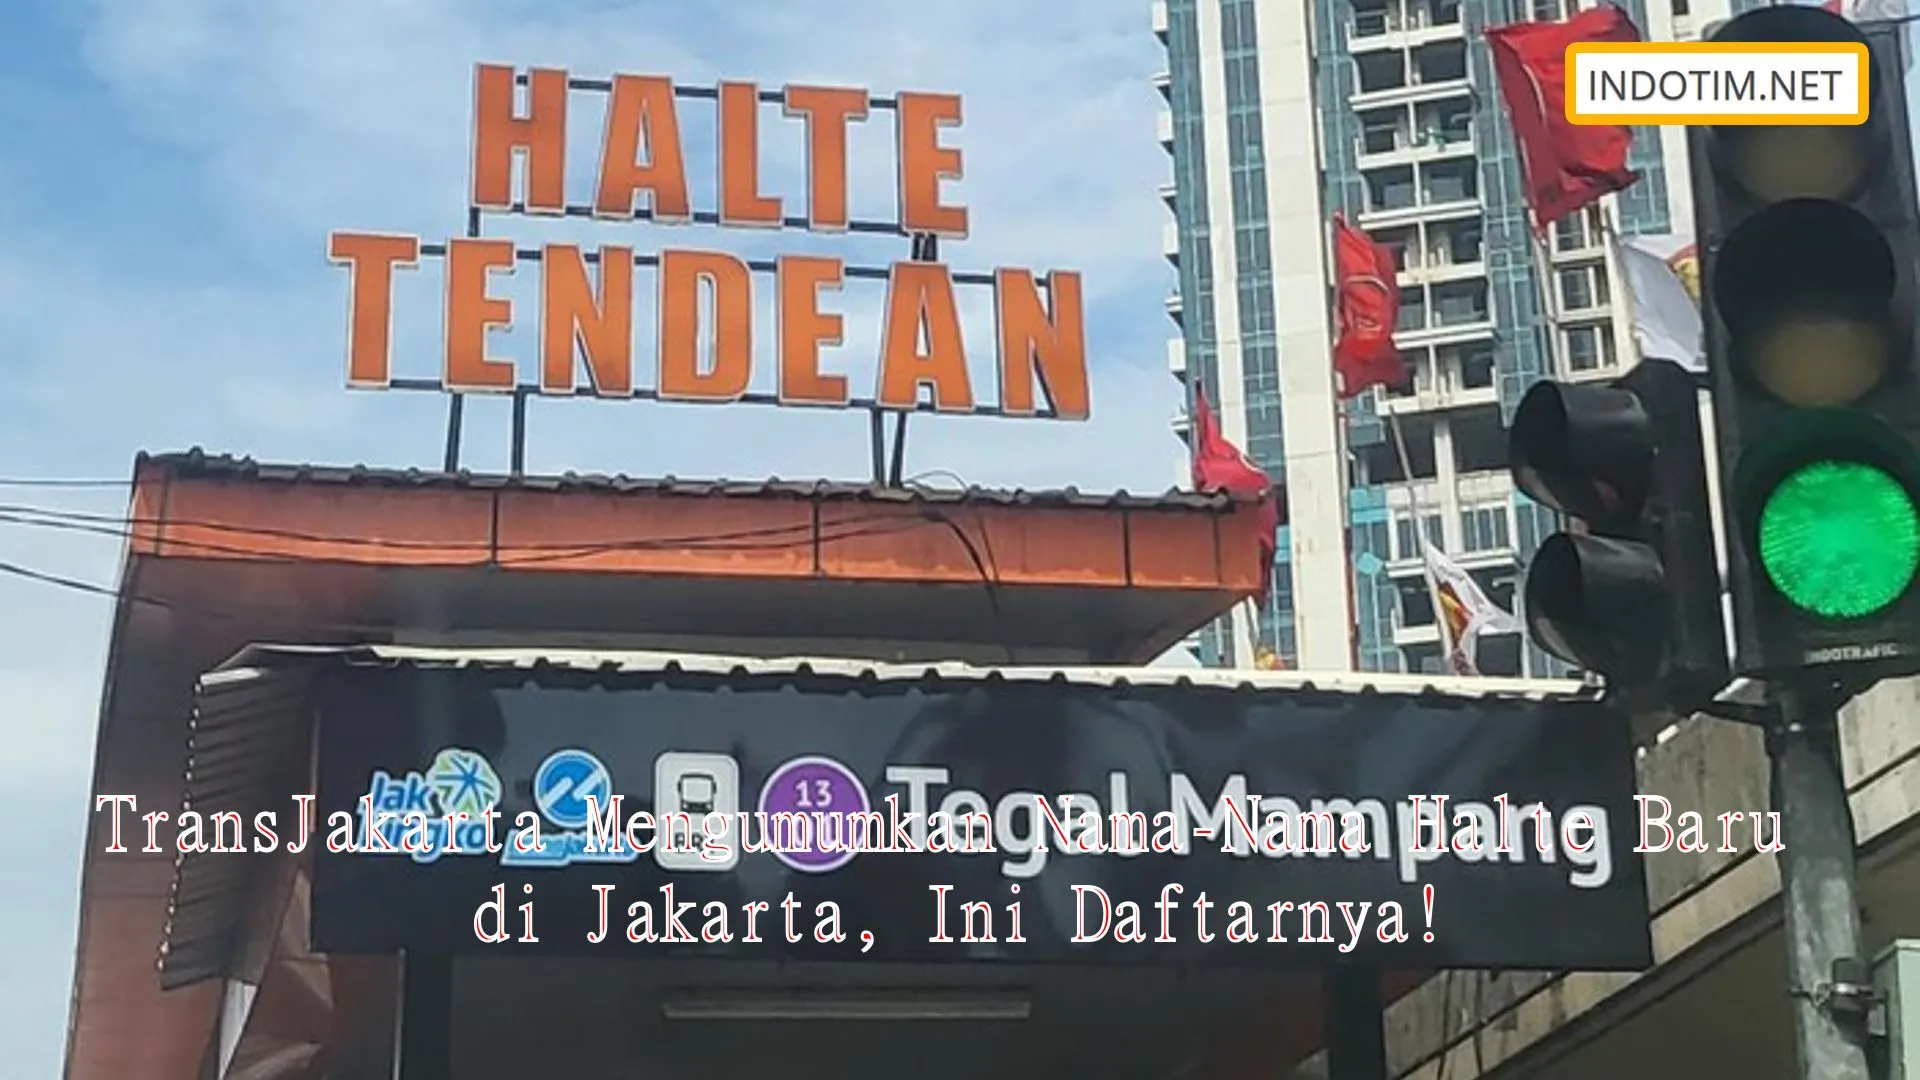 TransJakarta Mengumumkan Nama-Nama Halte Baru di Jakarta, Ini Daftarnya!